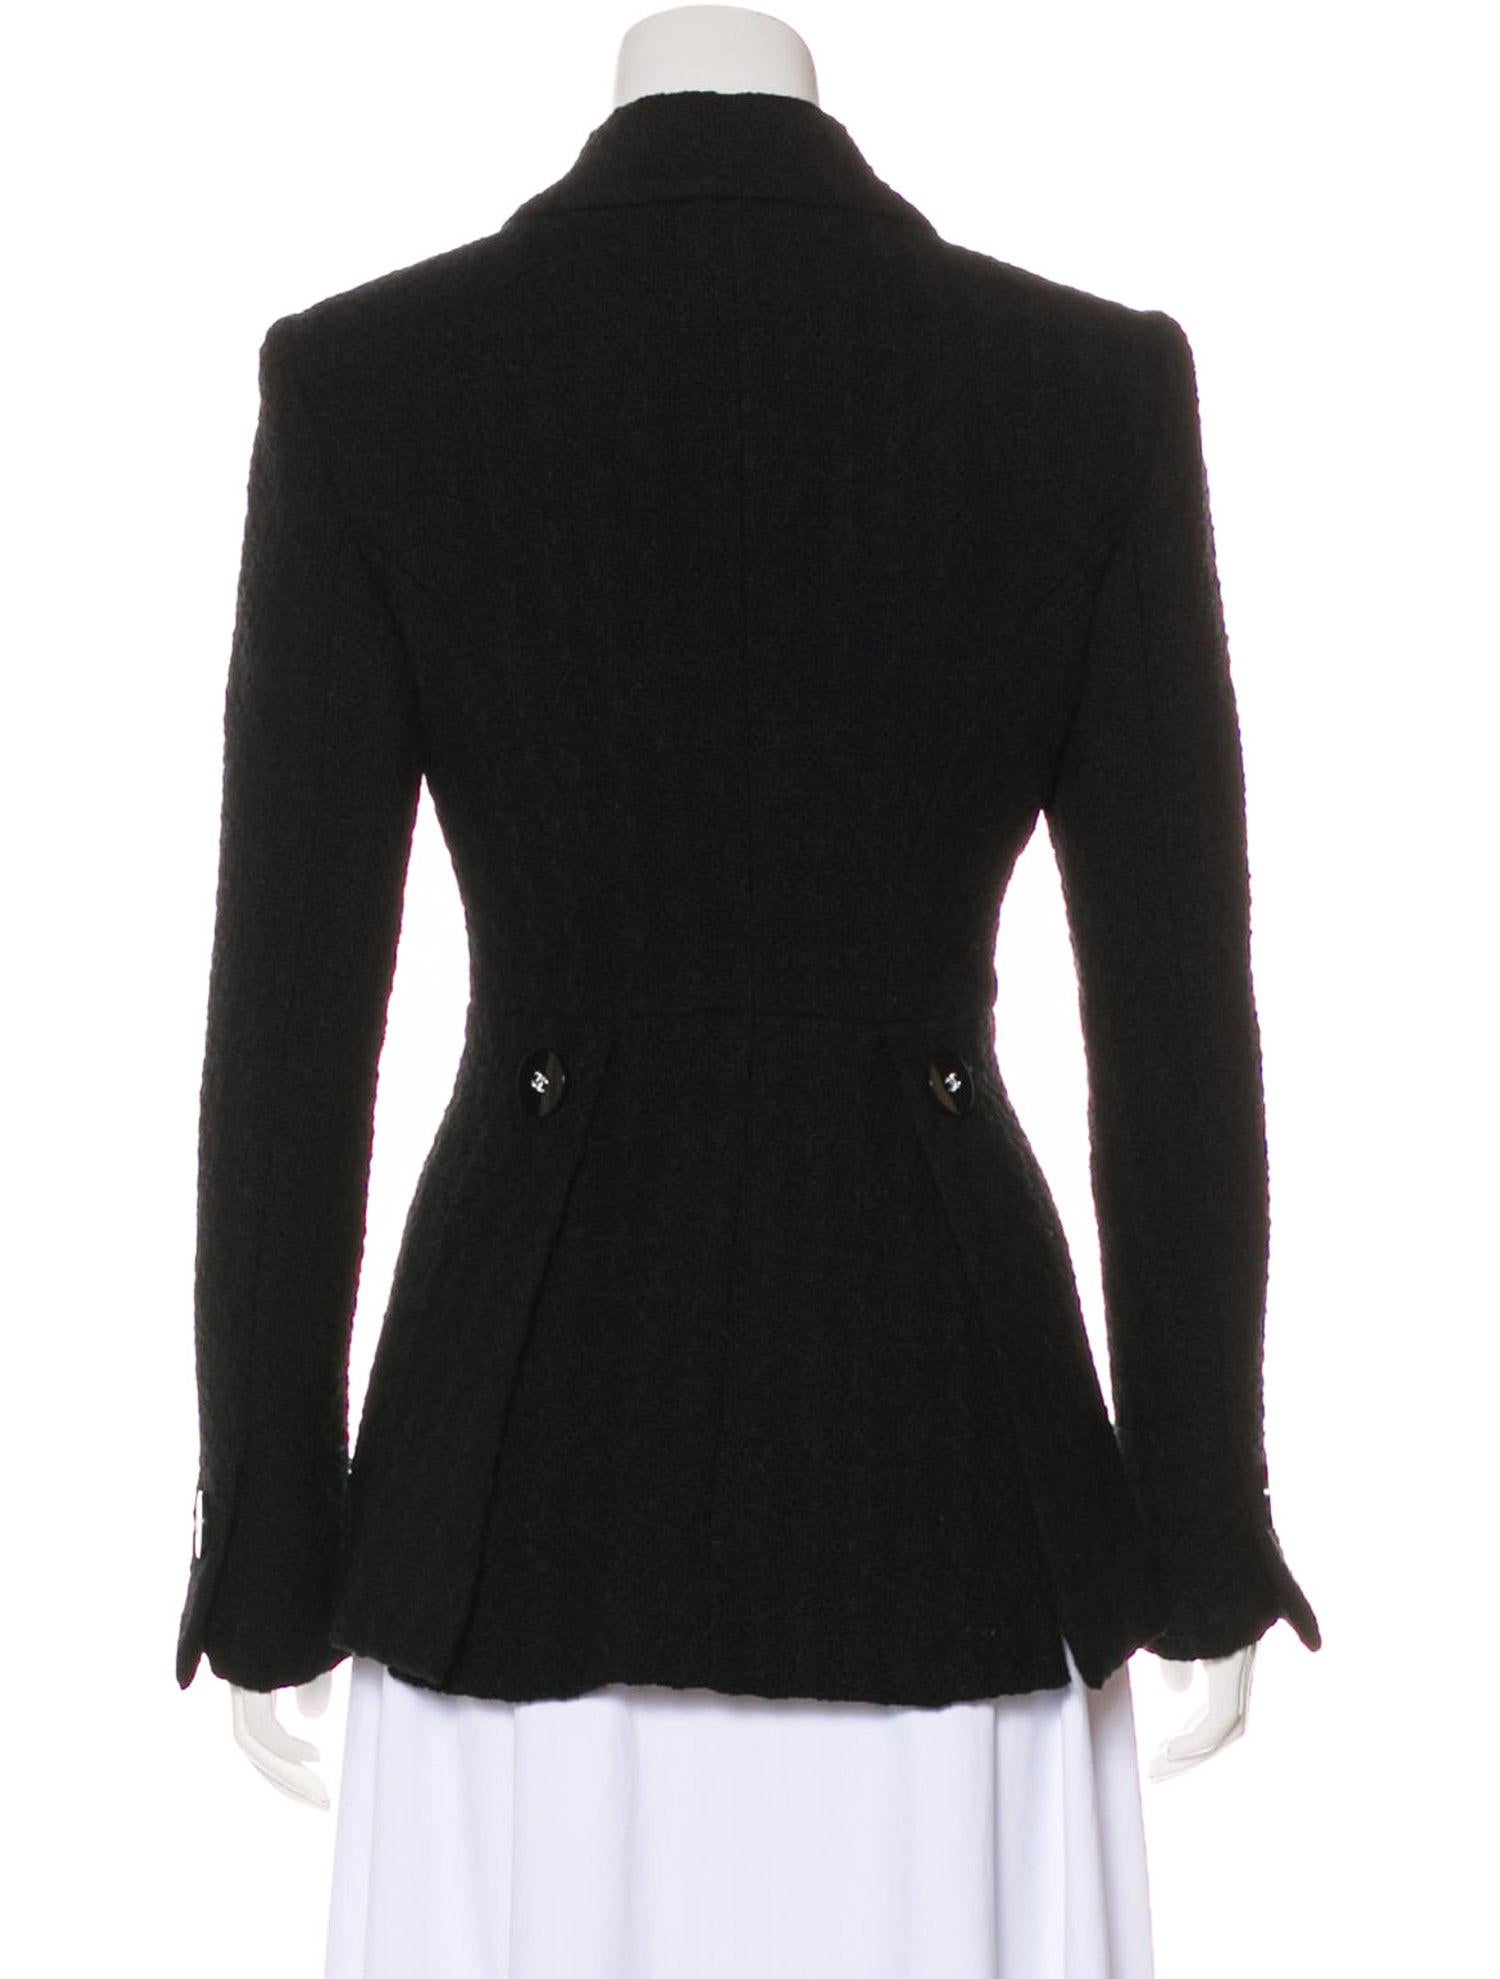 Chanel New Paris / Cosmopolite It-Girl Black Tweed Jacket For Sale 11